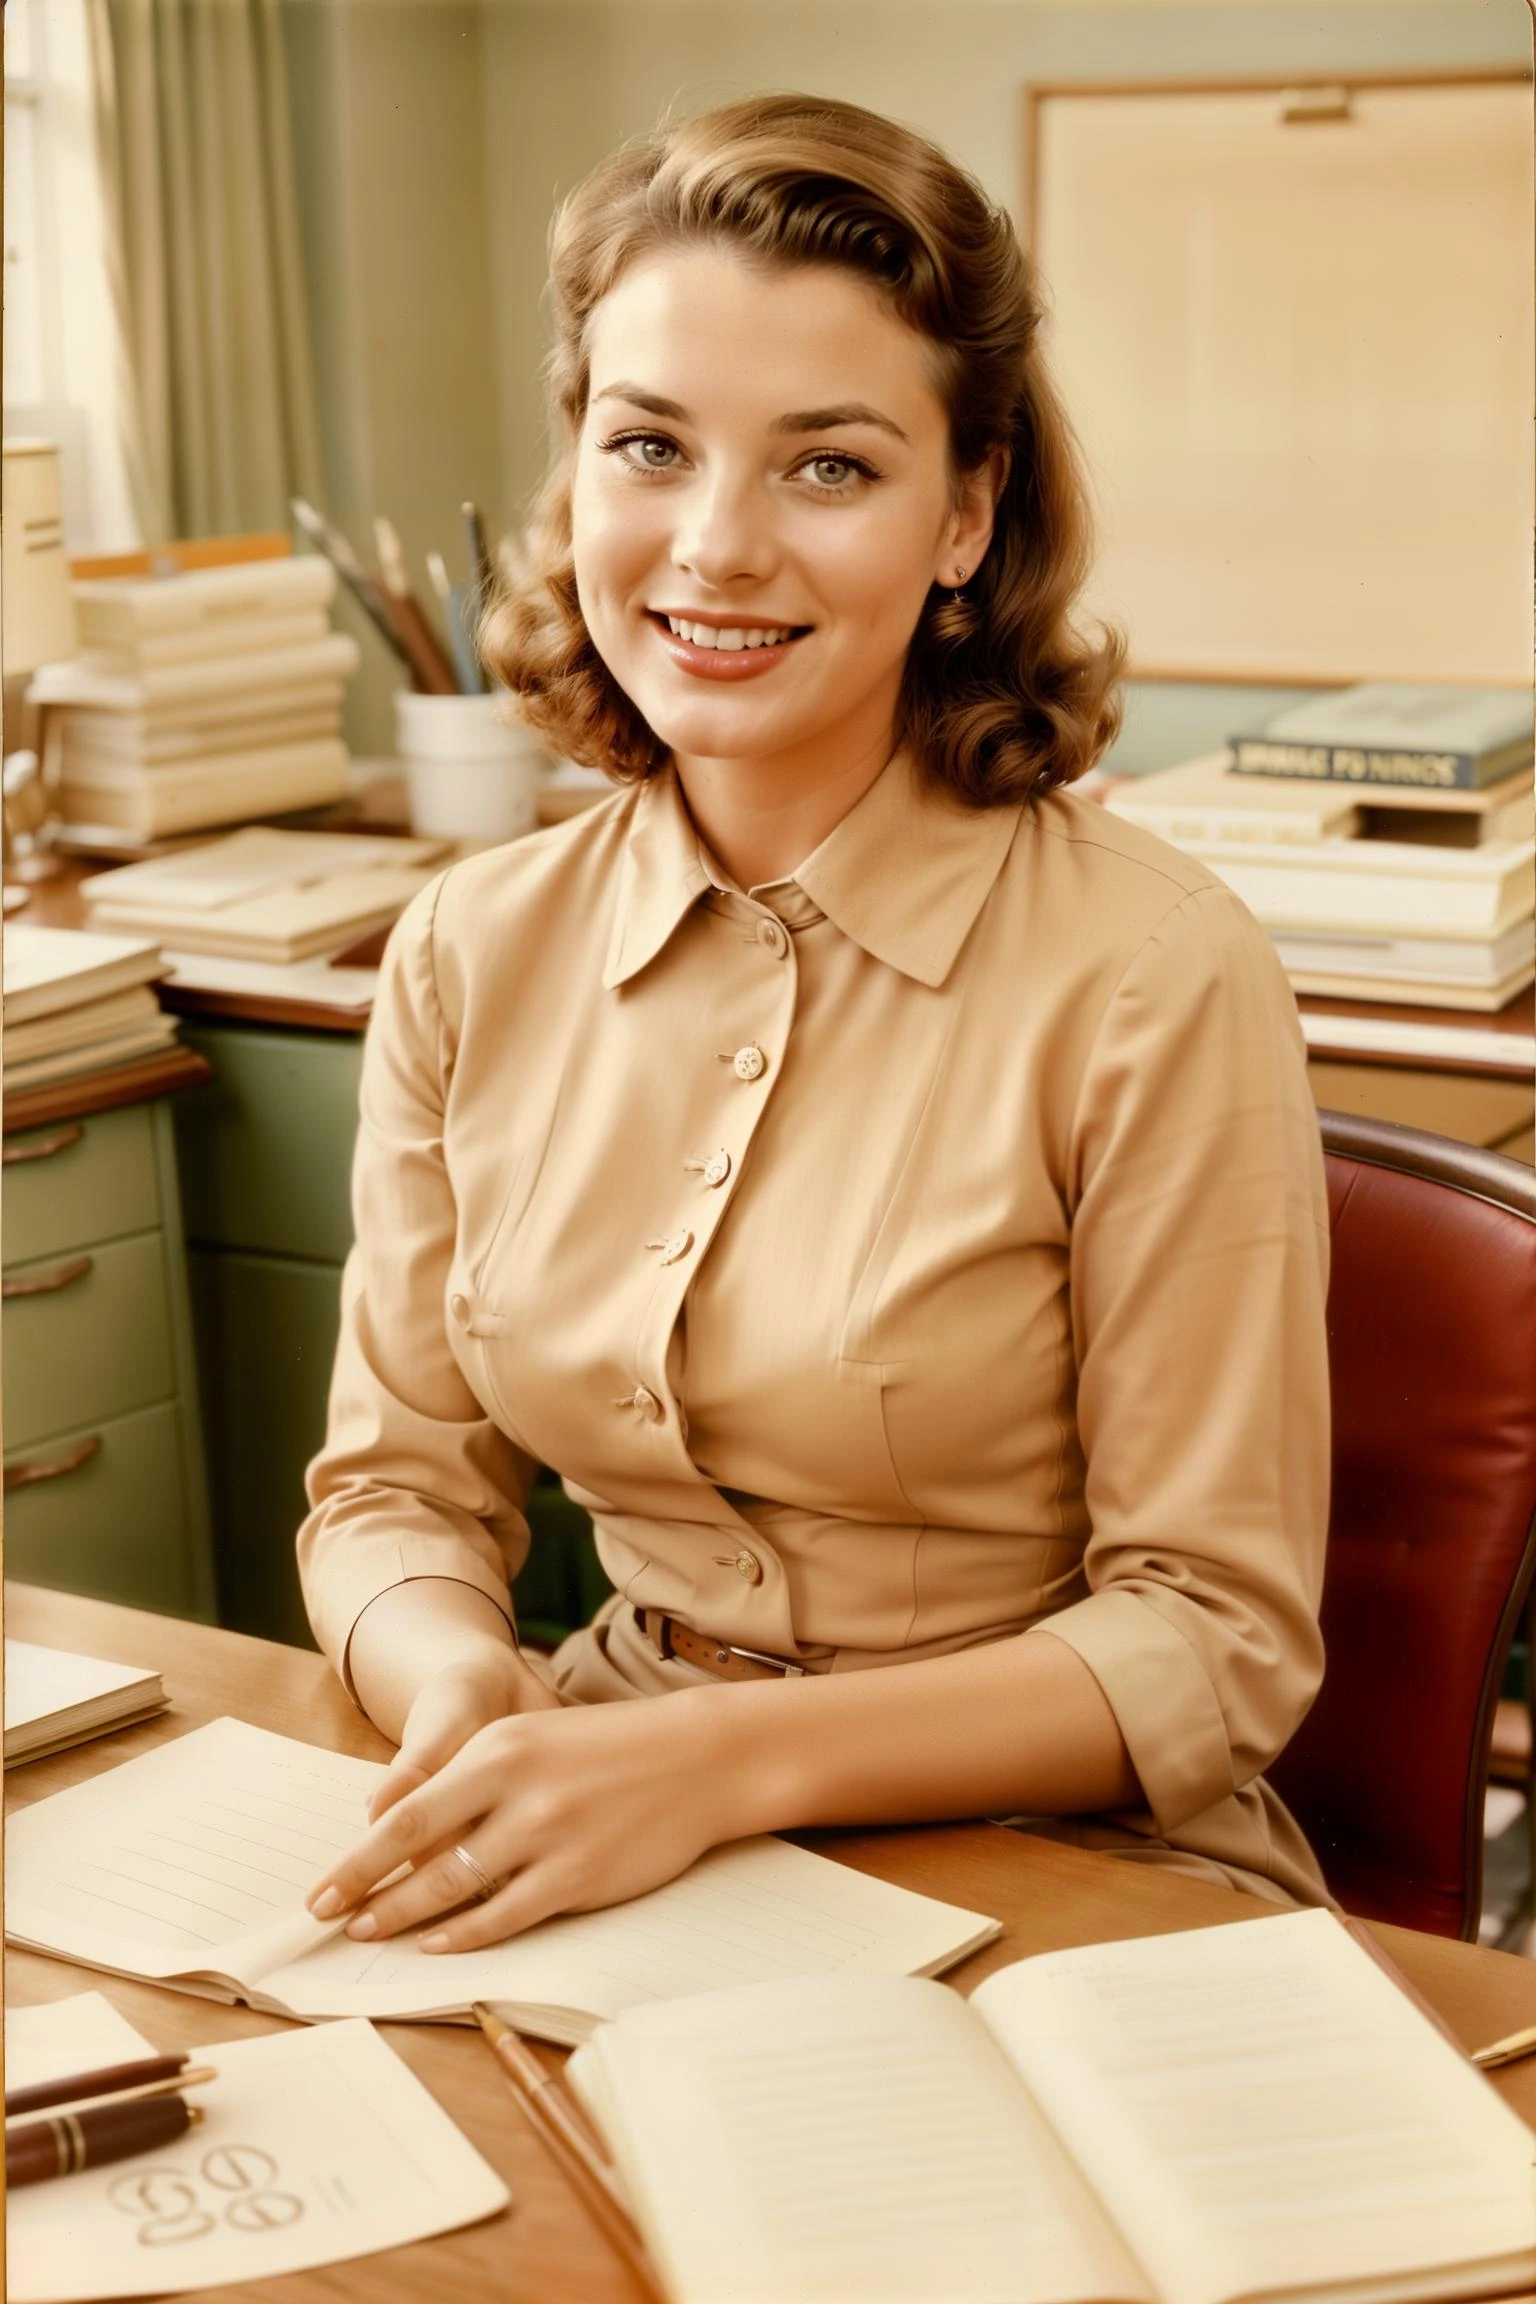 1955 年に撮影されたオフィス服を着た女性のビンテージ写真, マッドメンのテレビシーン, ハッピー, 薄茶色の髪, 一人で